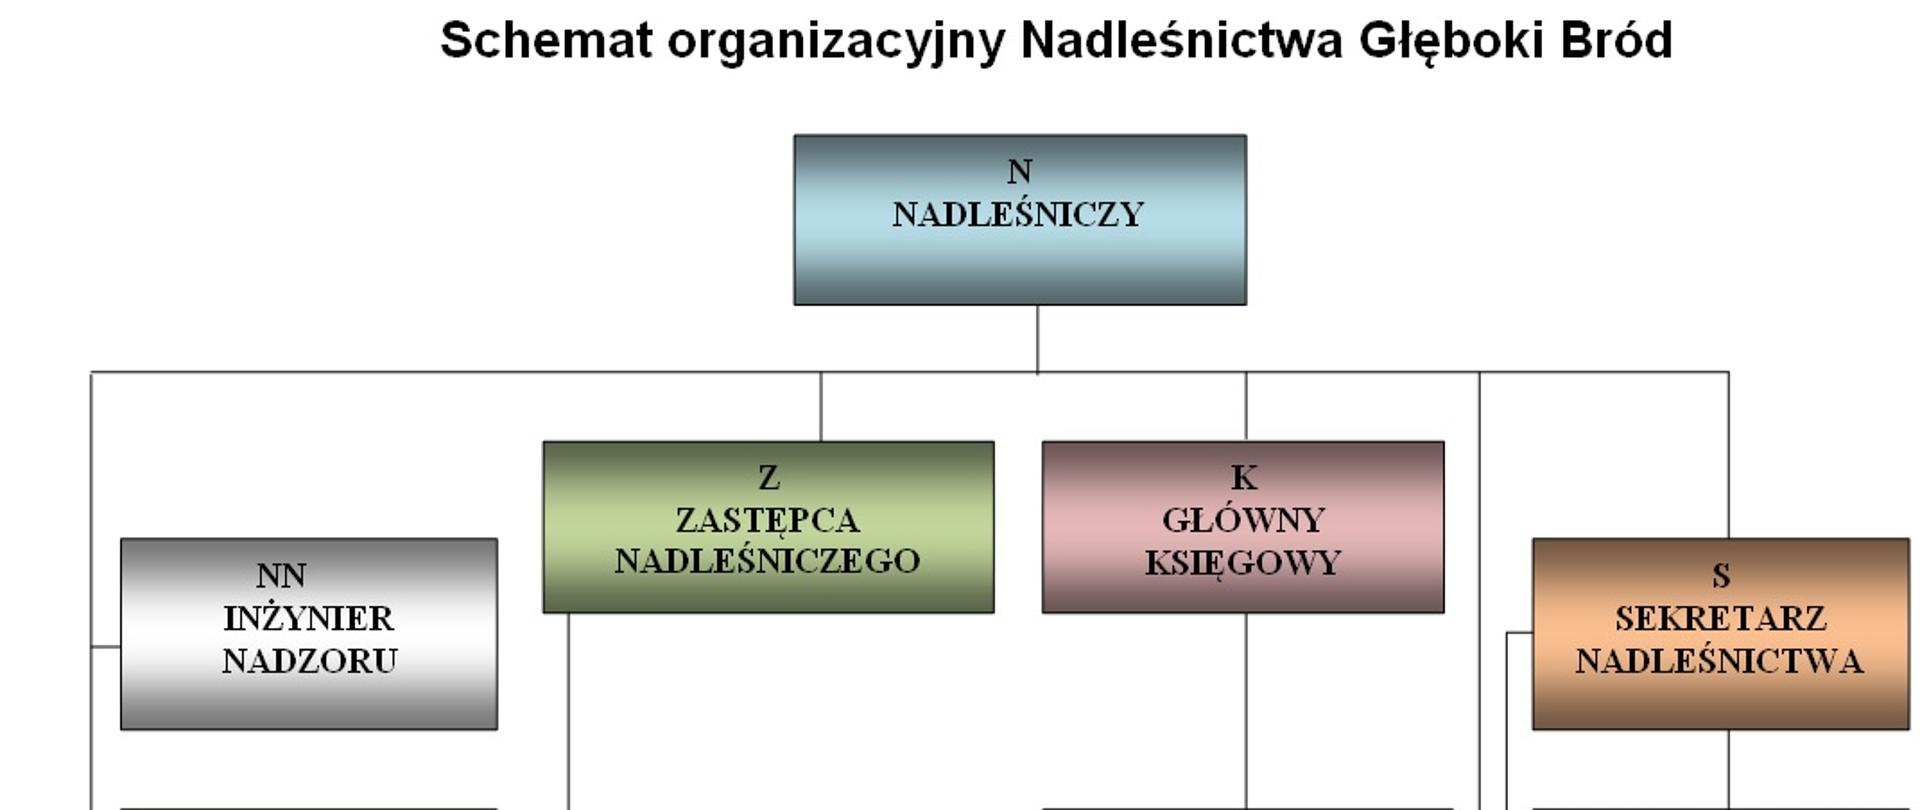 Schemat organizacyjny Nadleśnictwa Głęboki Bród w formie graficznej